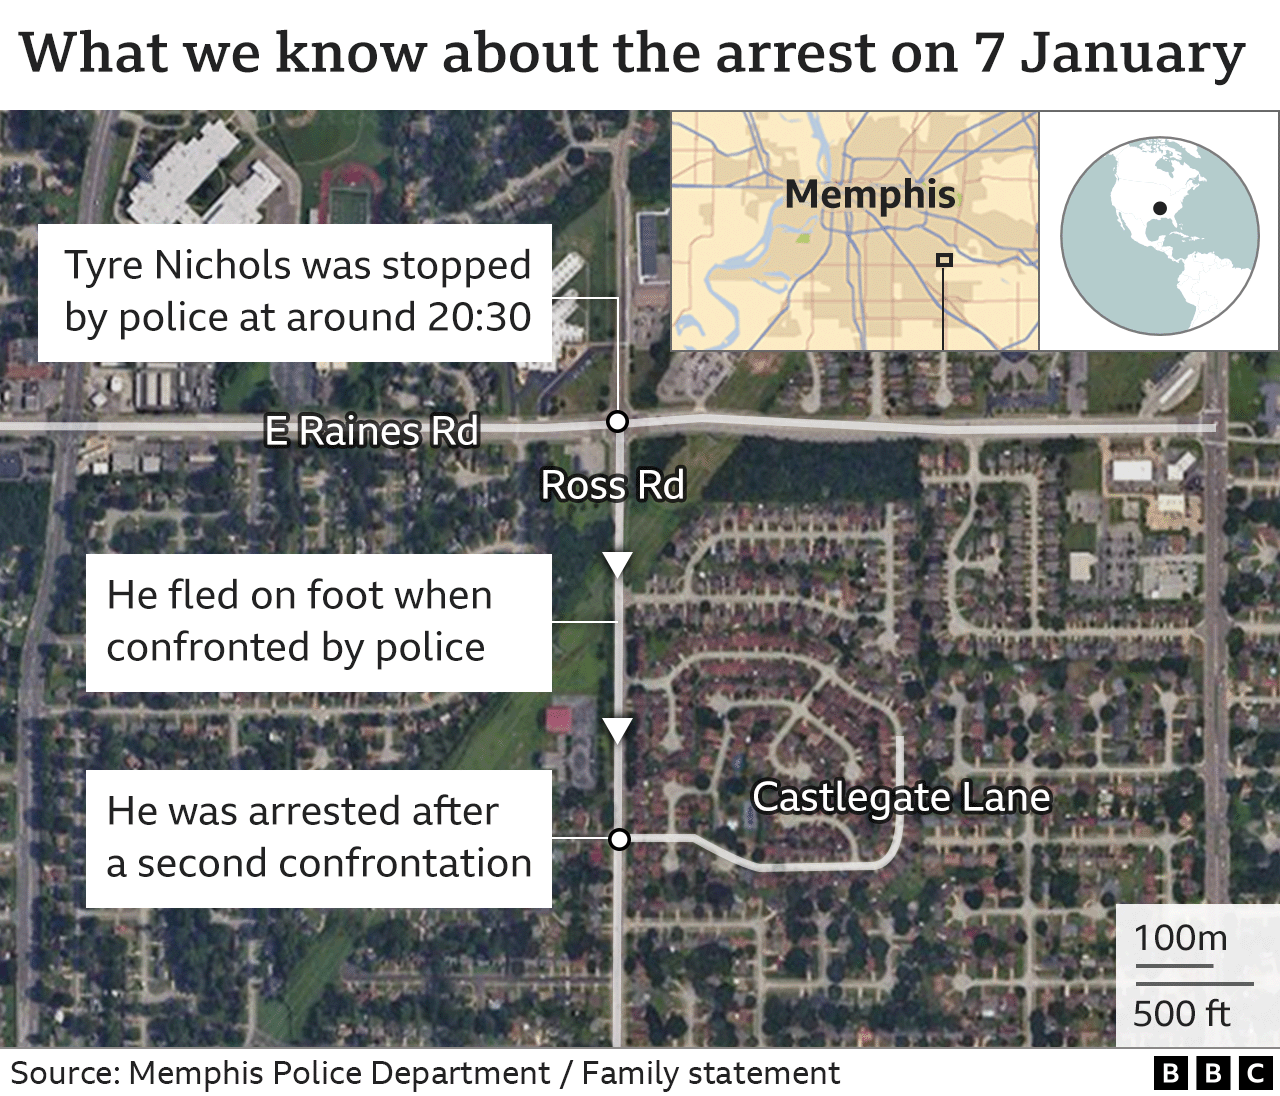 Карта, показывающая, что мы знаем об аресте Тайра Николса в ночь на 7 января: он был остановлен полицией около 20:30 на пересечении Ист-Рейнс-роуд и Росс-роуд в Мемфисе, но он бежал на юг по Росс-роуд. до того, как он был задержан возле Каслгейт-лейн после второй стычки с полицией.